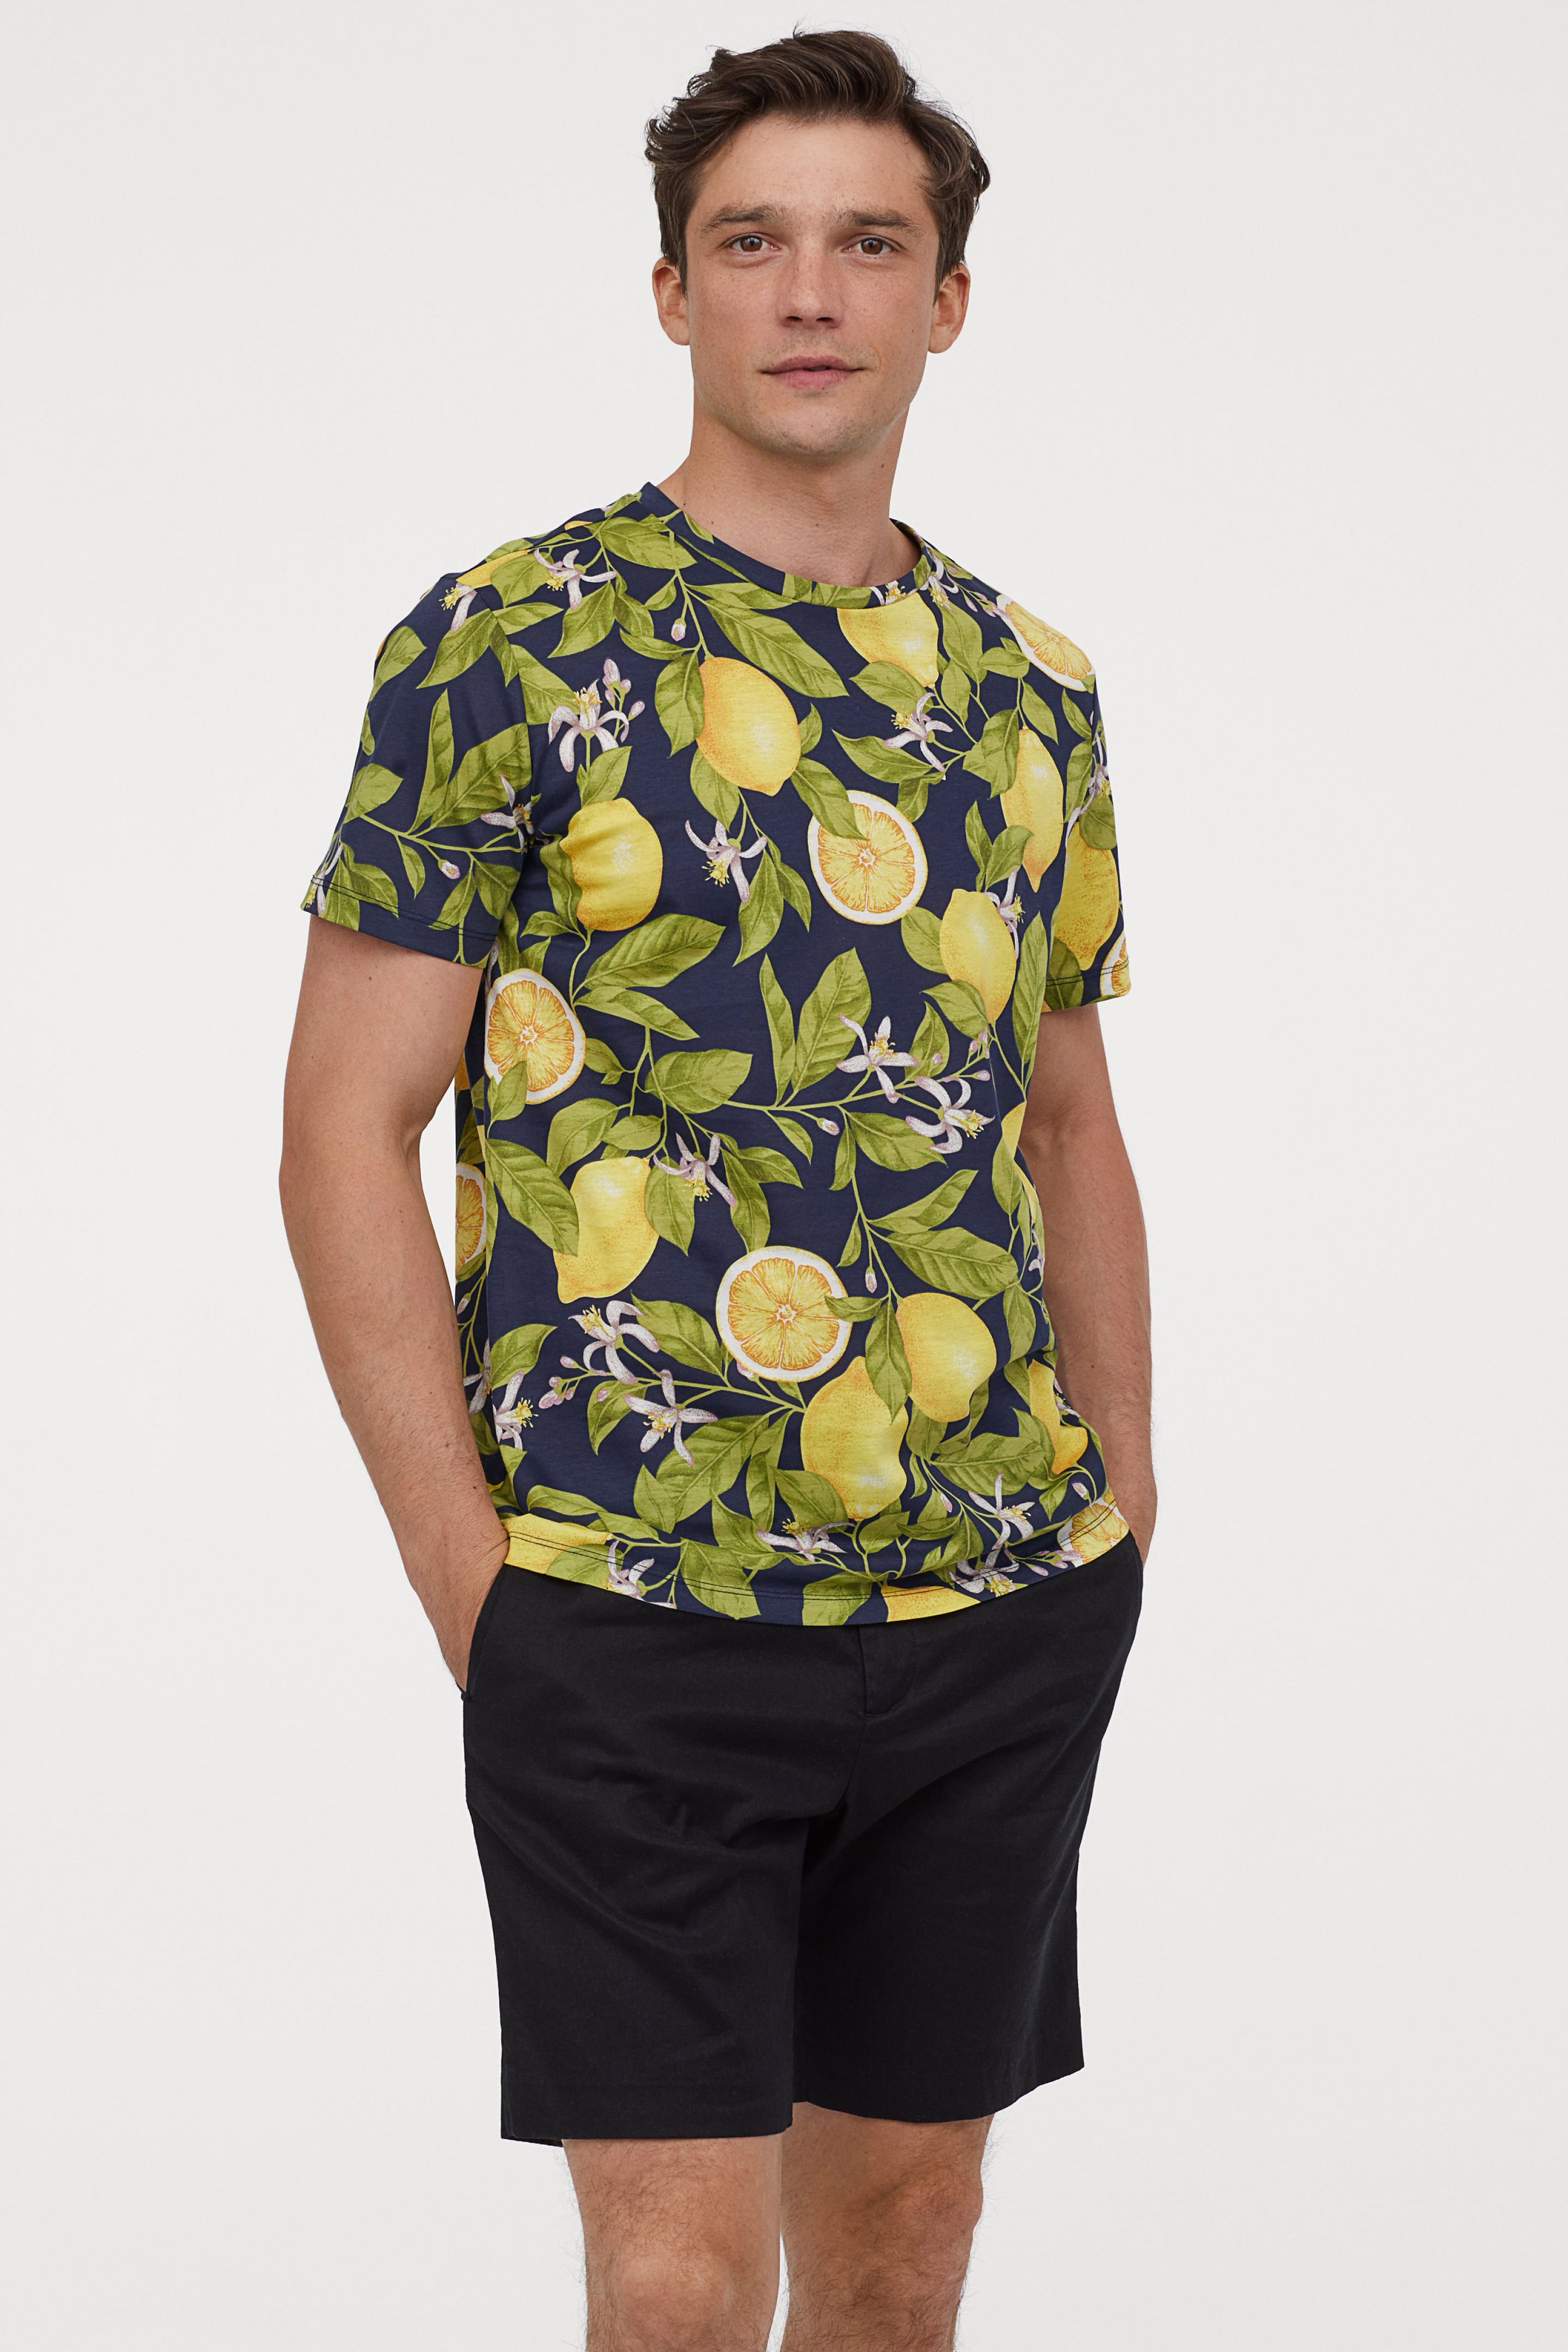 H M Japan On Twitter 新作メンズ 夏らしい レモン柄のシャツが登場 この夏はこのシャツで甘酸っぱい思い出を Hmman Https T Co Ocqppvjair Https T Co Iubbqahaid Twitter